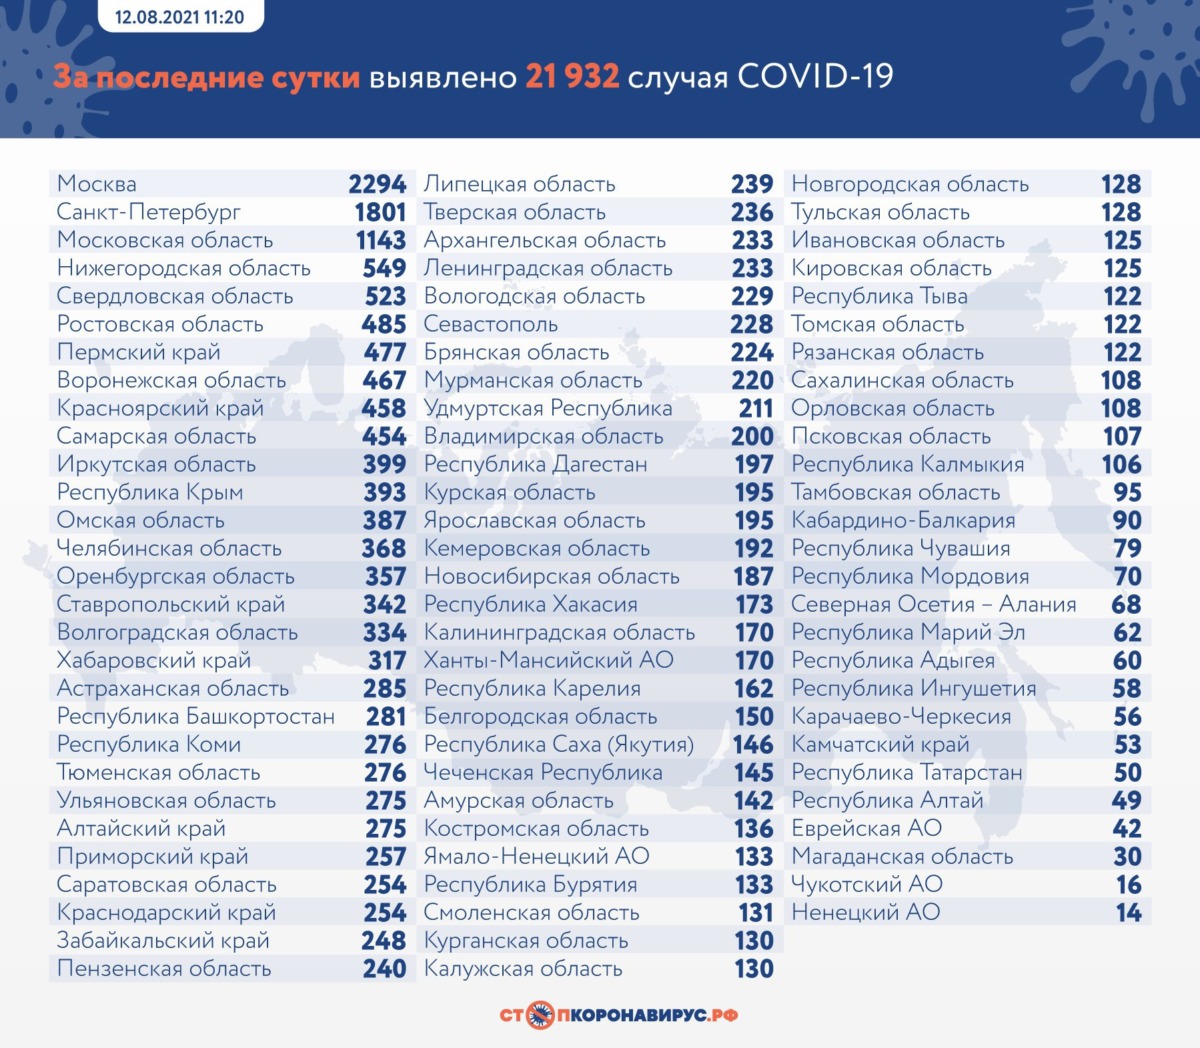 Новый антирекорд по смертям от коронавируса в России на 12 августа